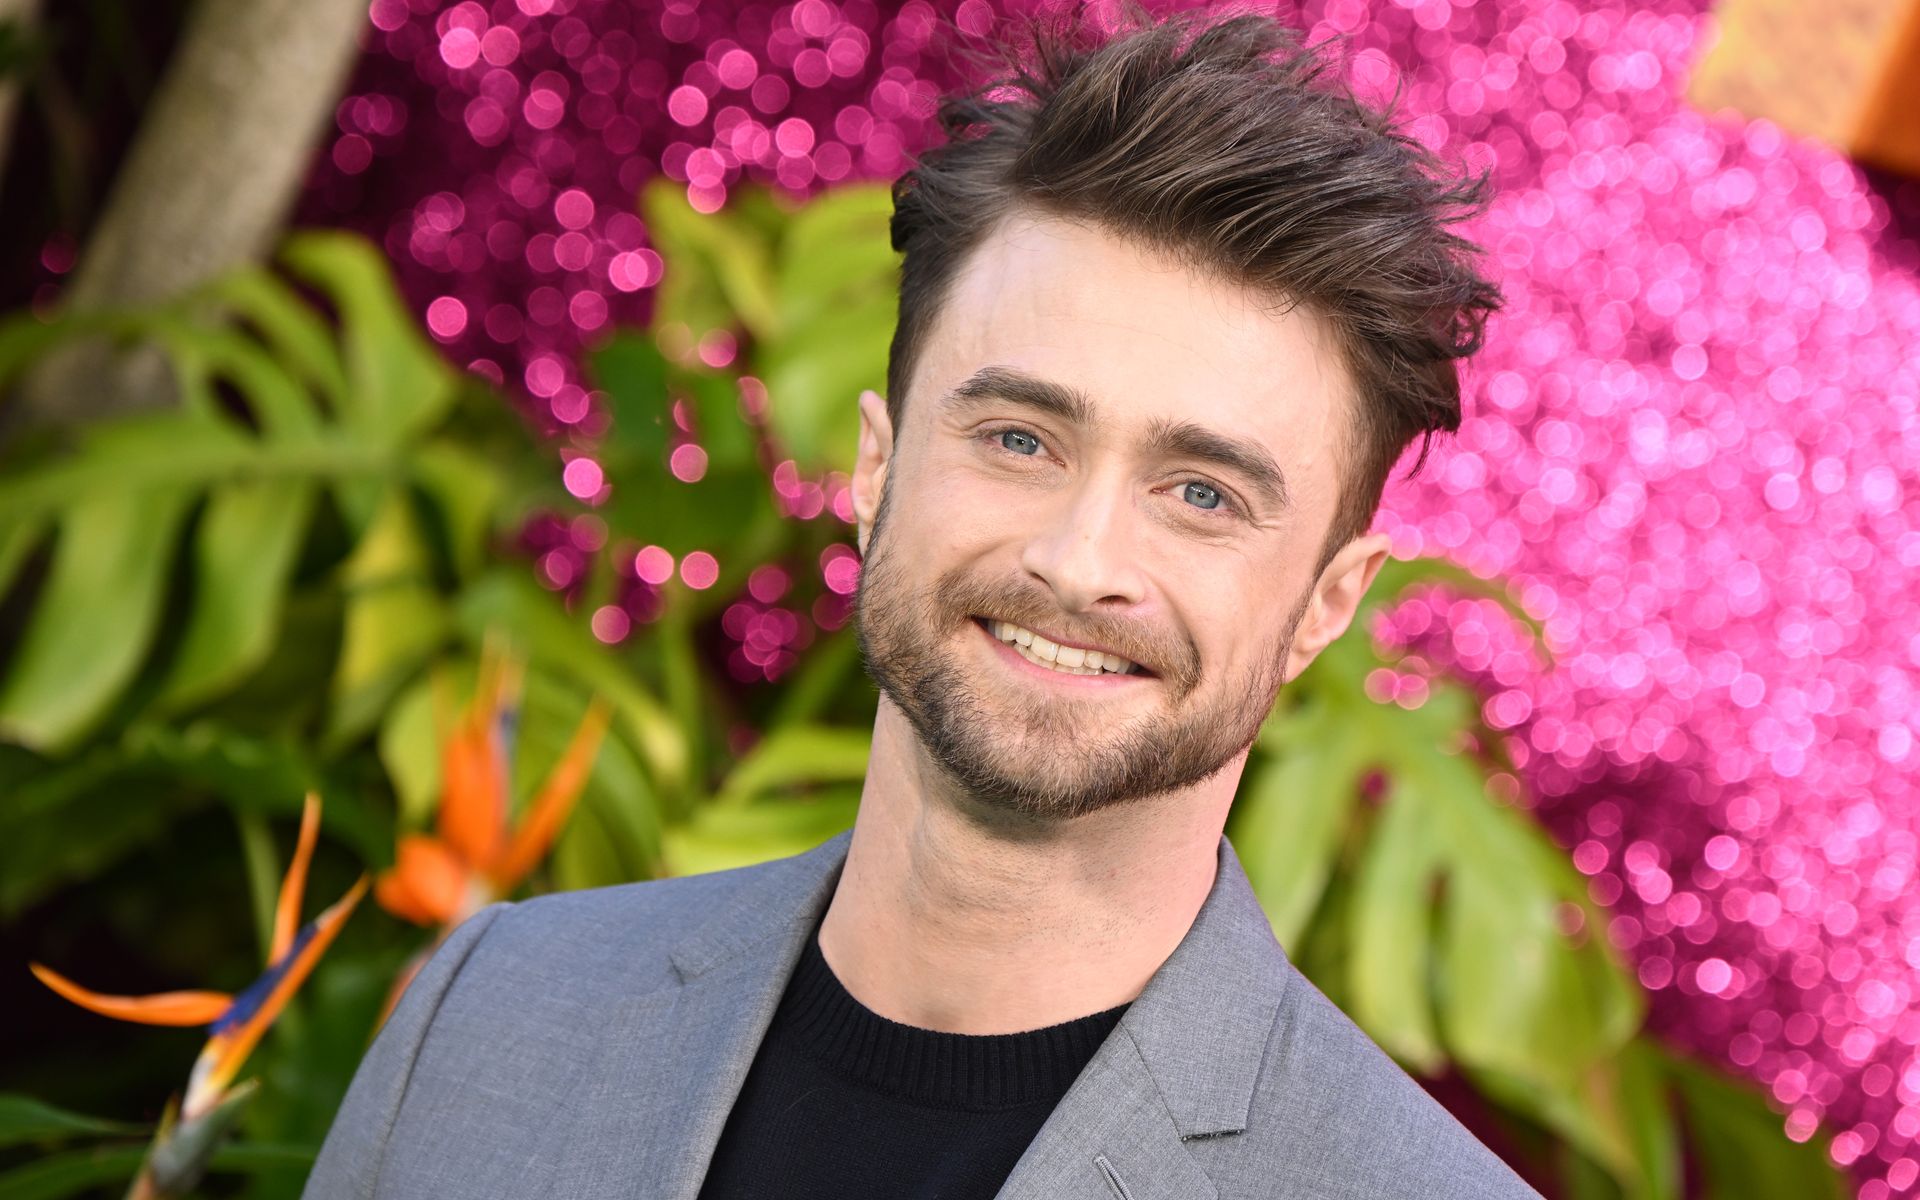 <p>Nachdem er in seiner Jugend die Hauptrolle in acht Blockbustern gespielt hatte, schlug Daniel Radcliffe nach Ende der Reihe bewusst einen anderen Weg ein: Er suchte sich vorwiegend Rollen in Theaterstücken und Independentfilmen aus, um nicht ewig Harry Potter zu bleiben.</p>